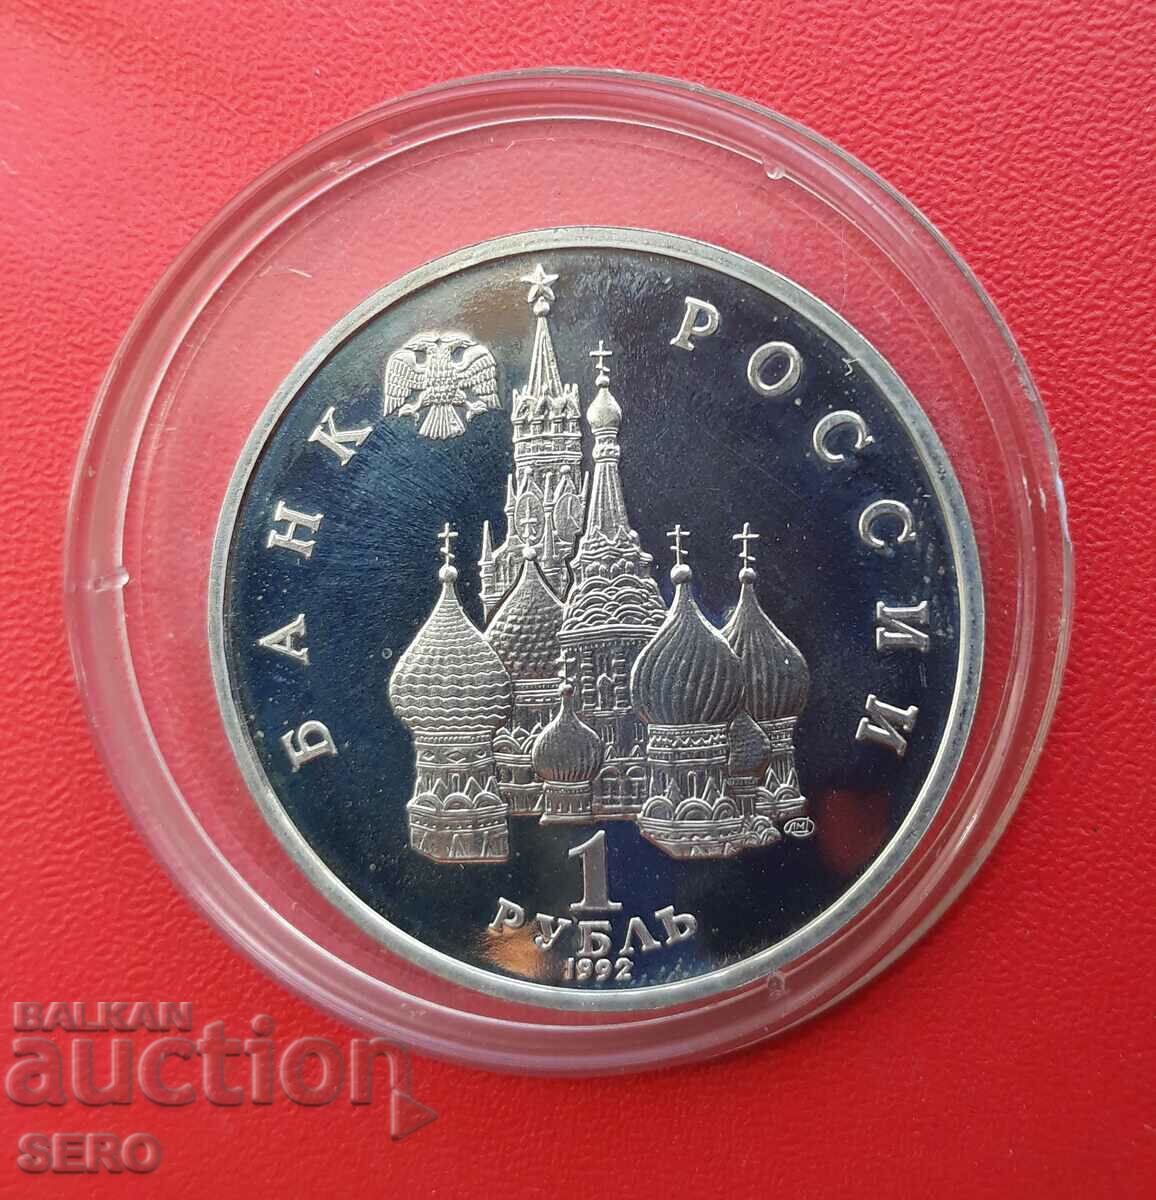 Russia-1 ruble 1992